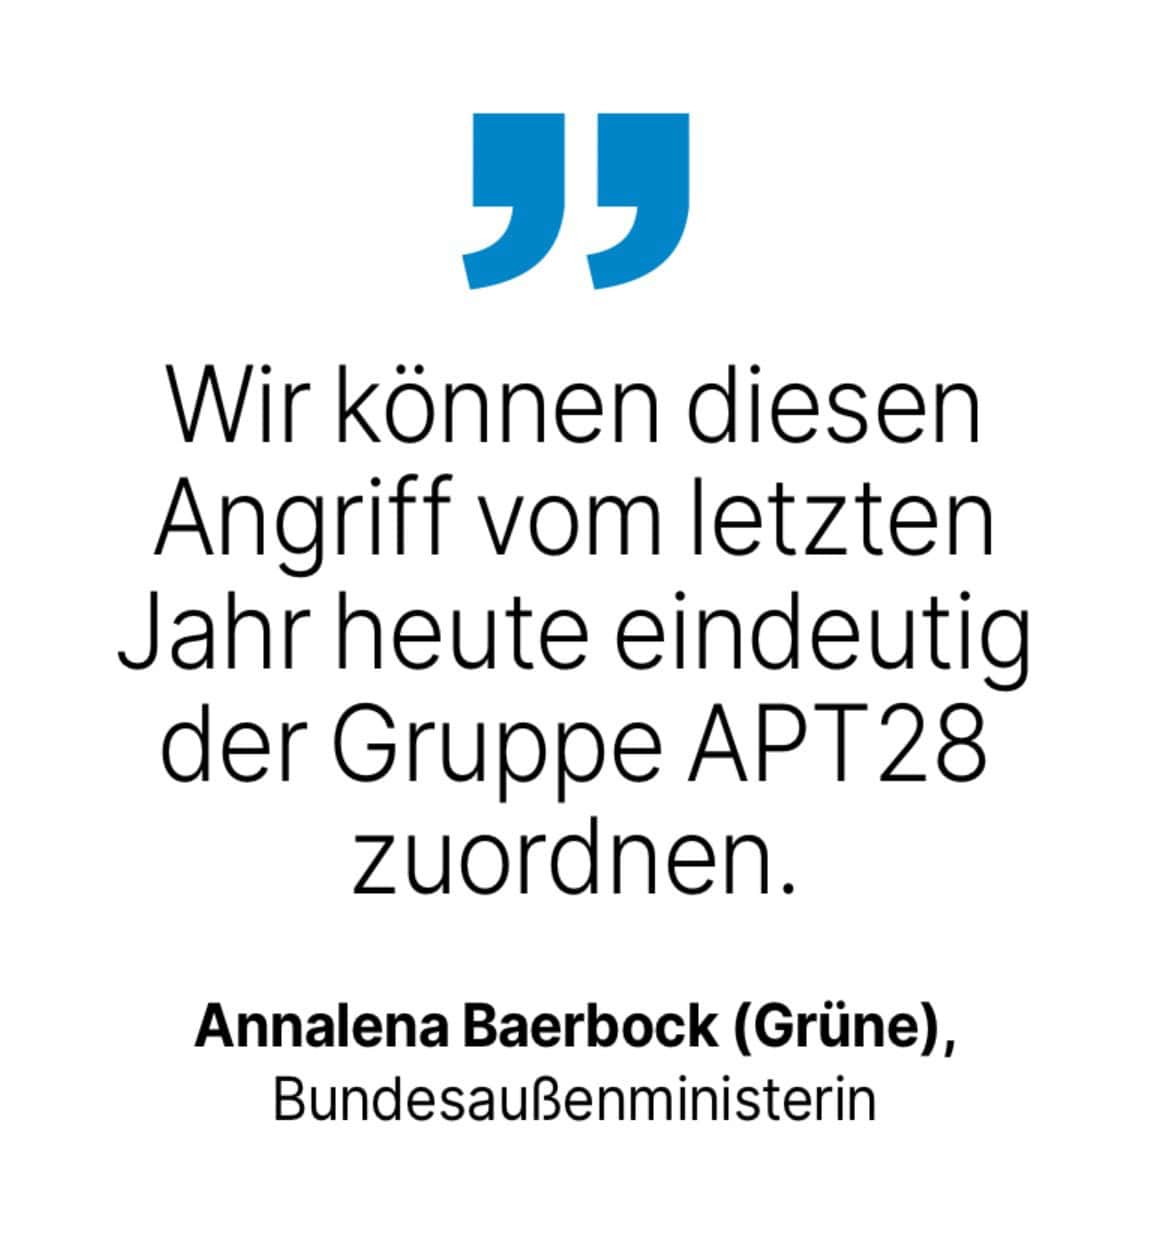 Annalena Baerbock (Grüne), Bundesaußenministerin: Wir können diesen Angriff vom letzten Jahr heute eindeutig der Gruppe APT28 zuordnen.